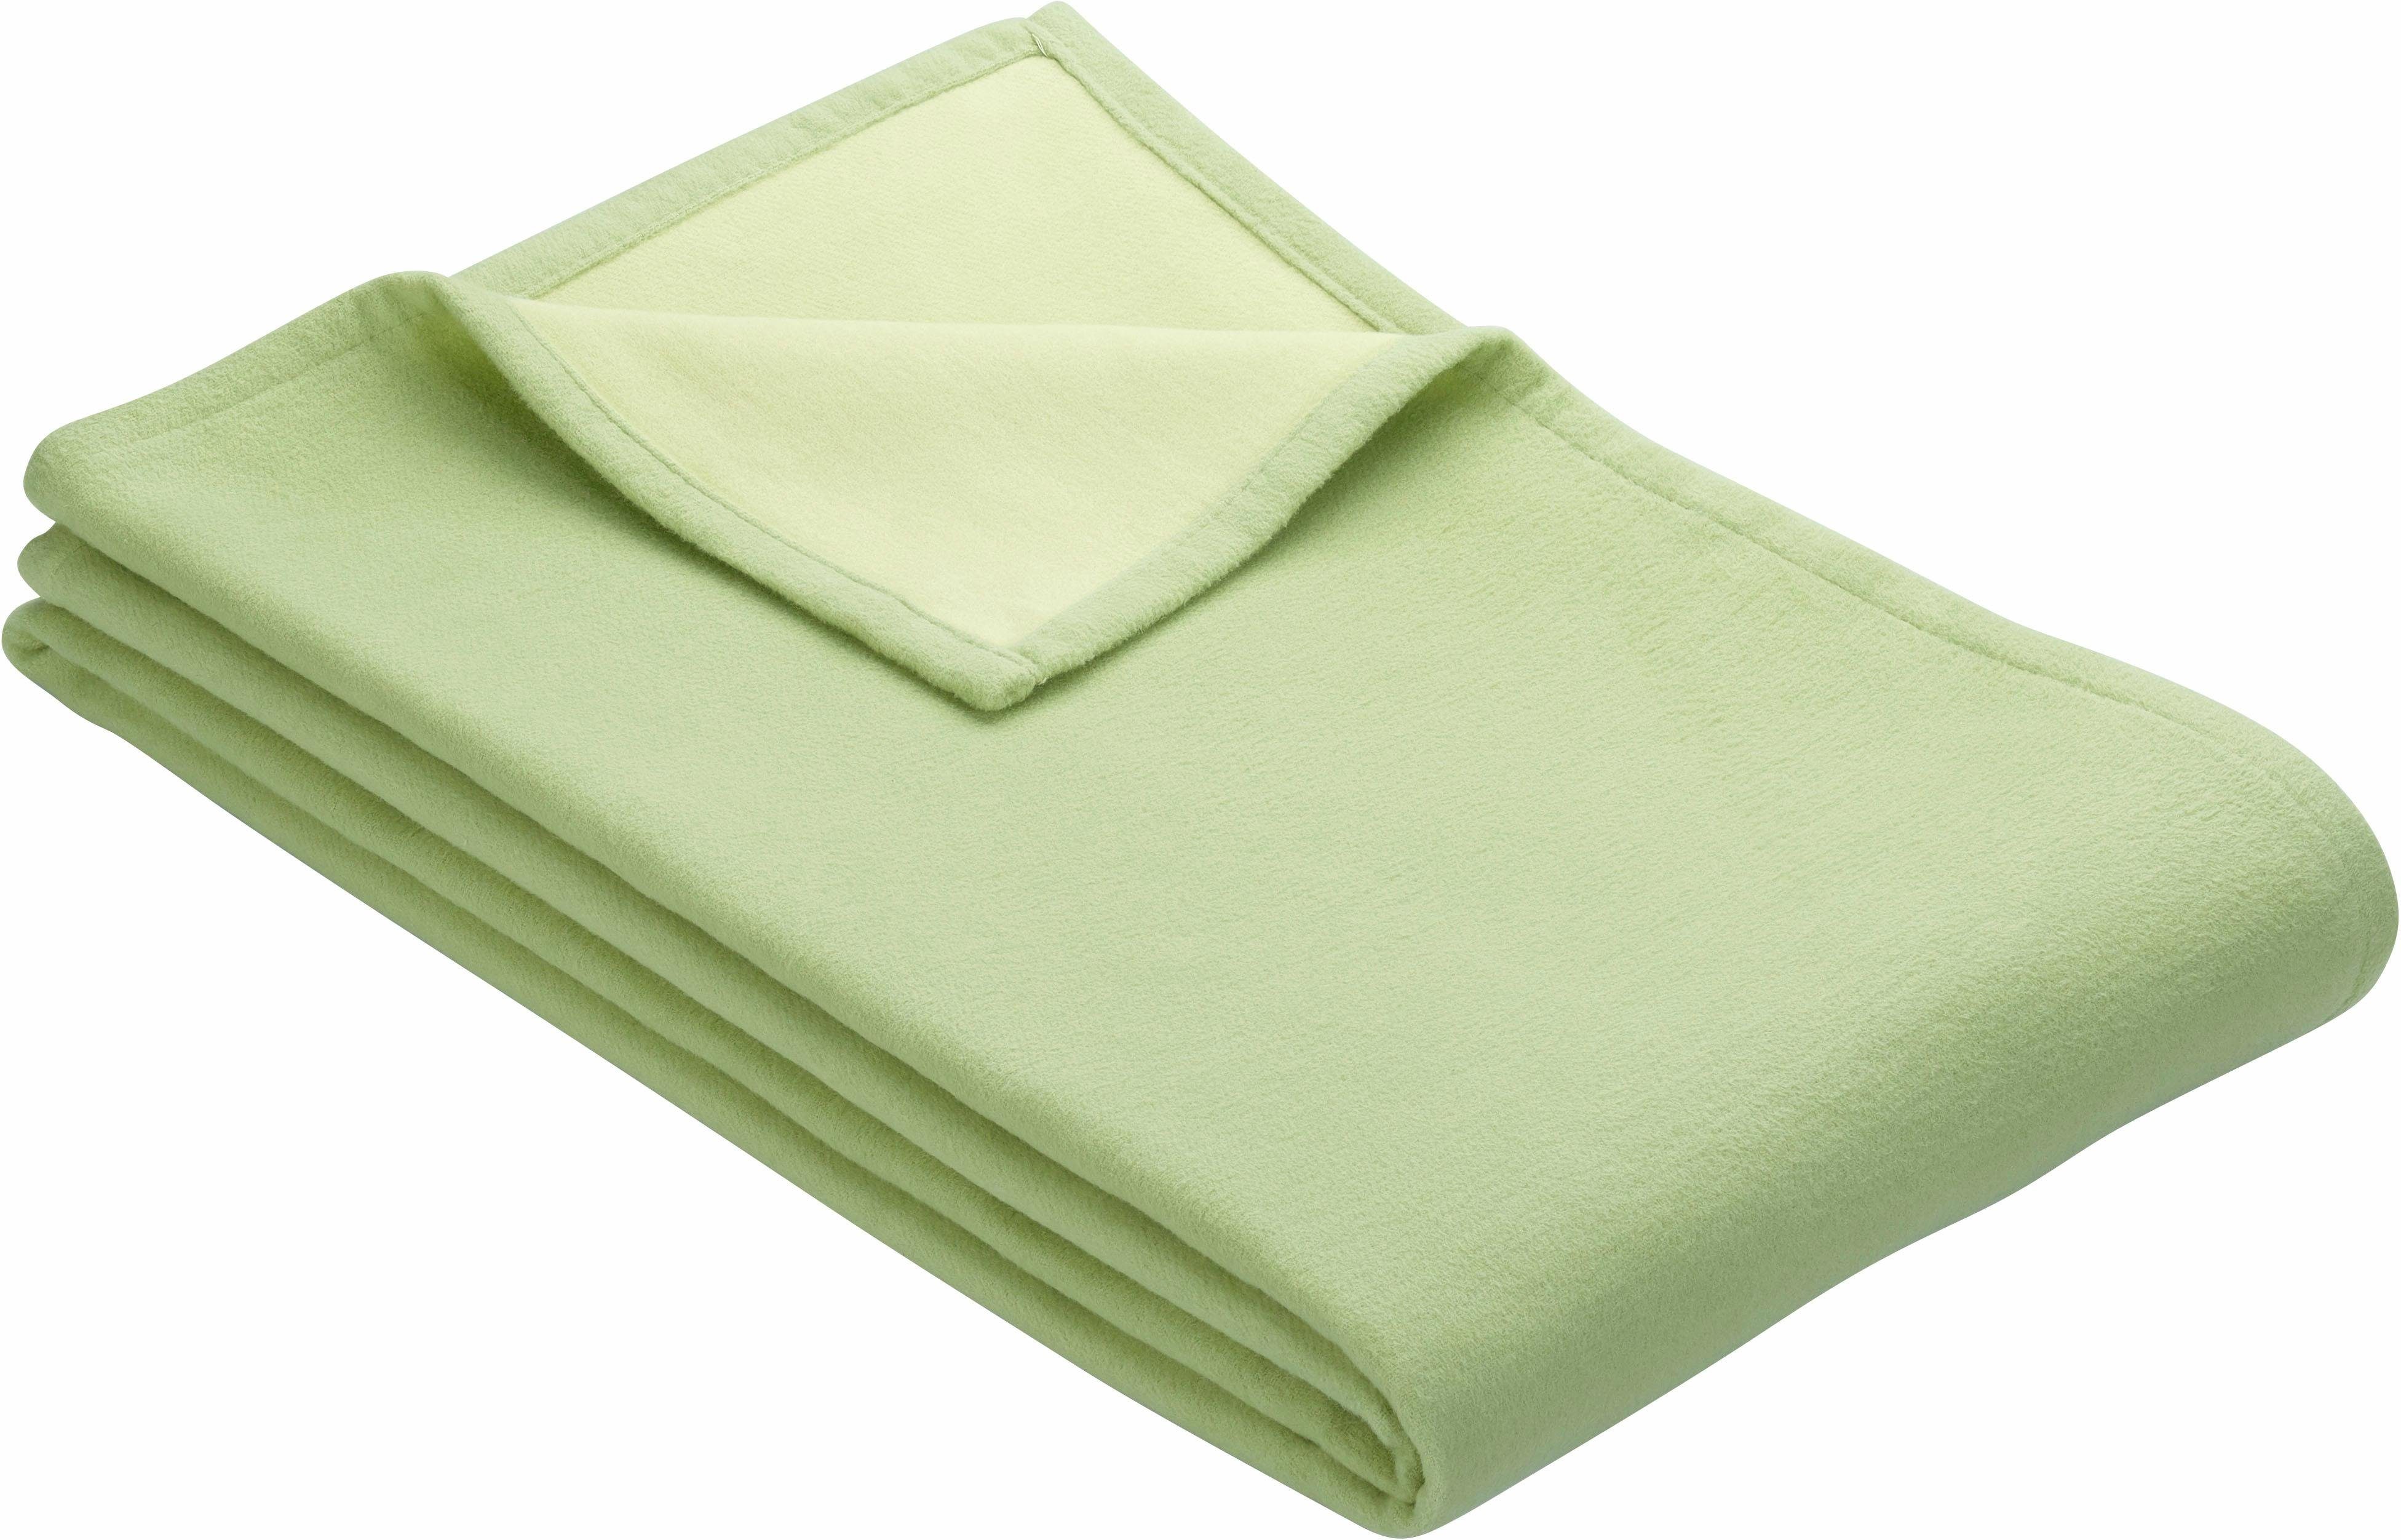 Wohndecke Cotton Pur, IBENA, in trendigen Farben hellgrün